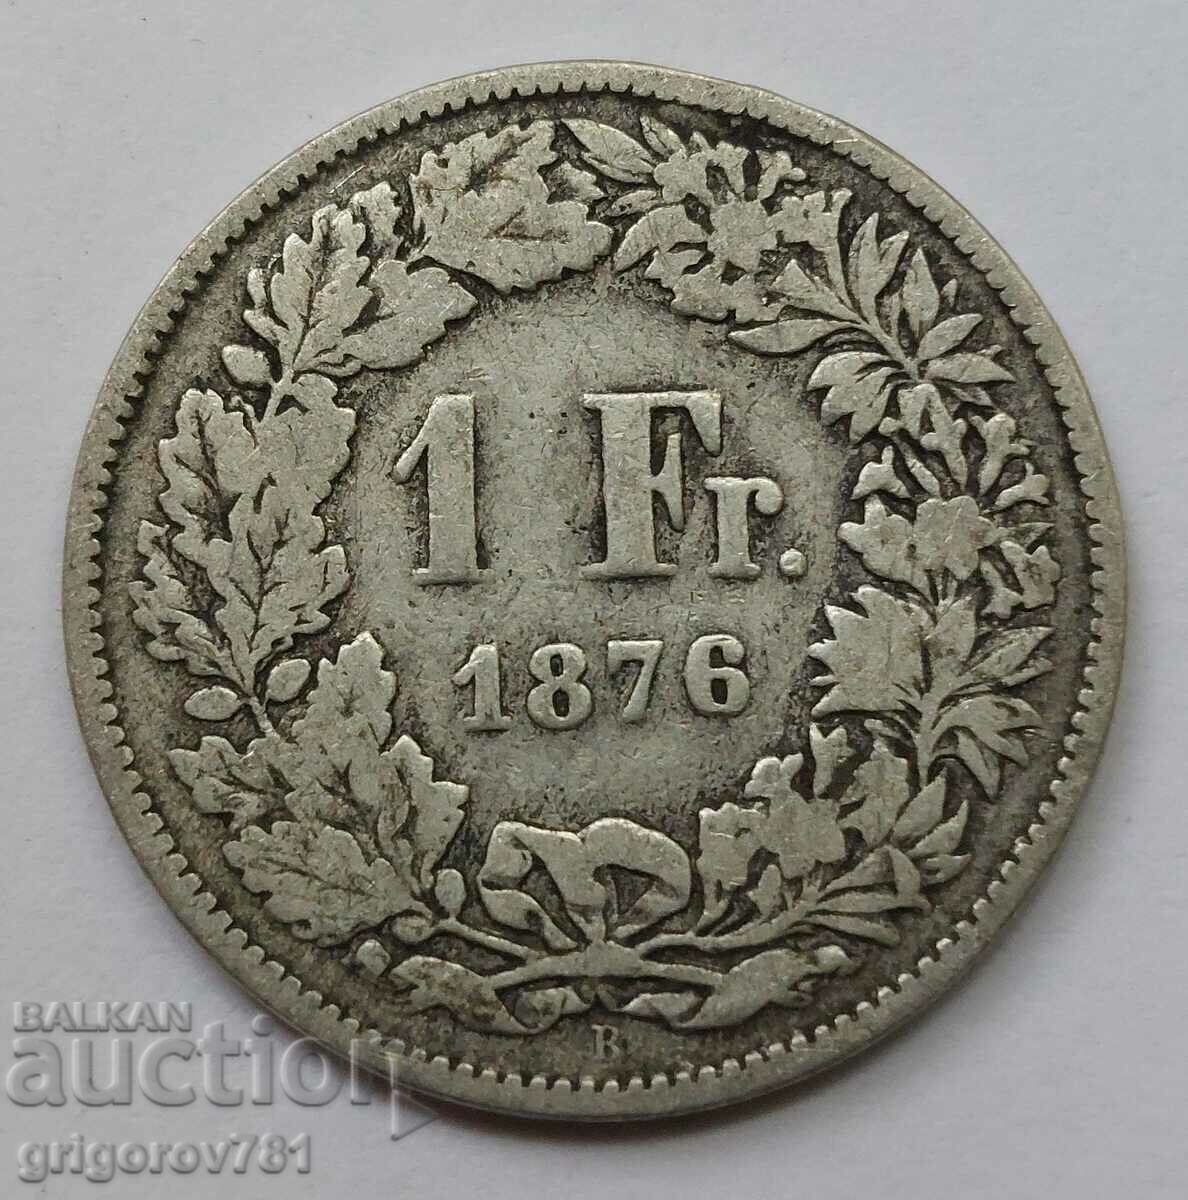 Ασημένιο 1 φράγκου Ελβετία 1876 Β - ασημένιο νόμισμα